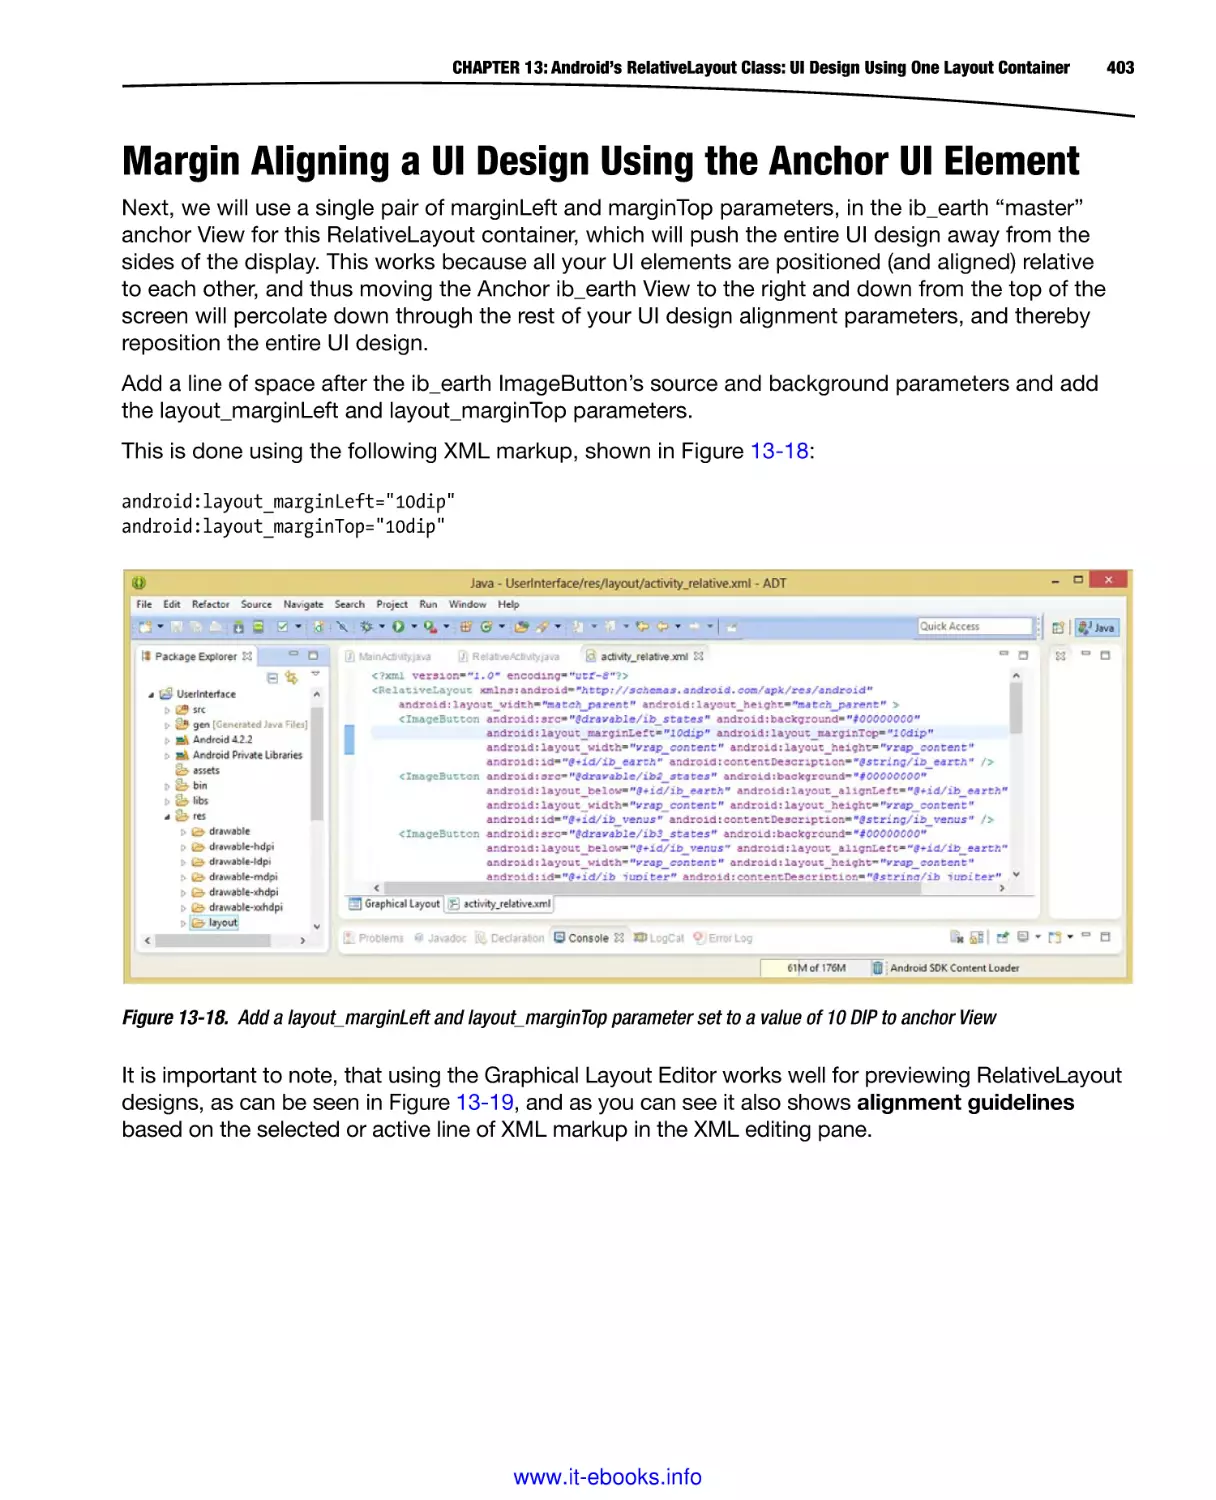 Margin Aligning a UI Design Using the Anchor UI Element